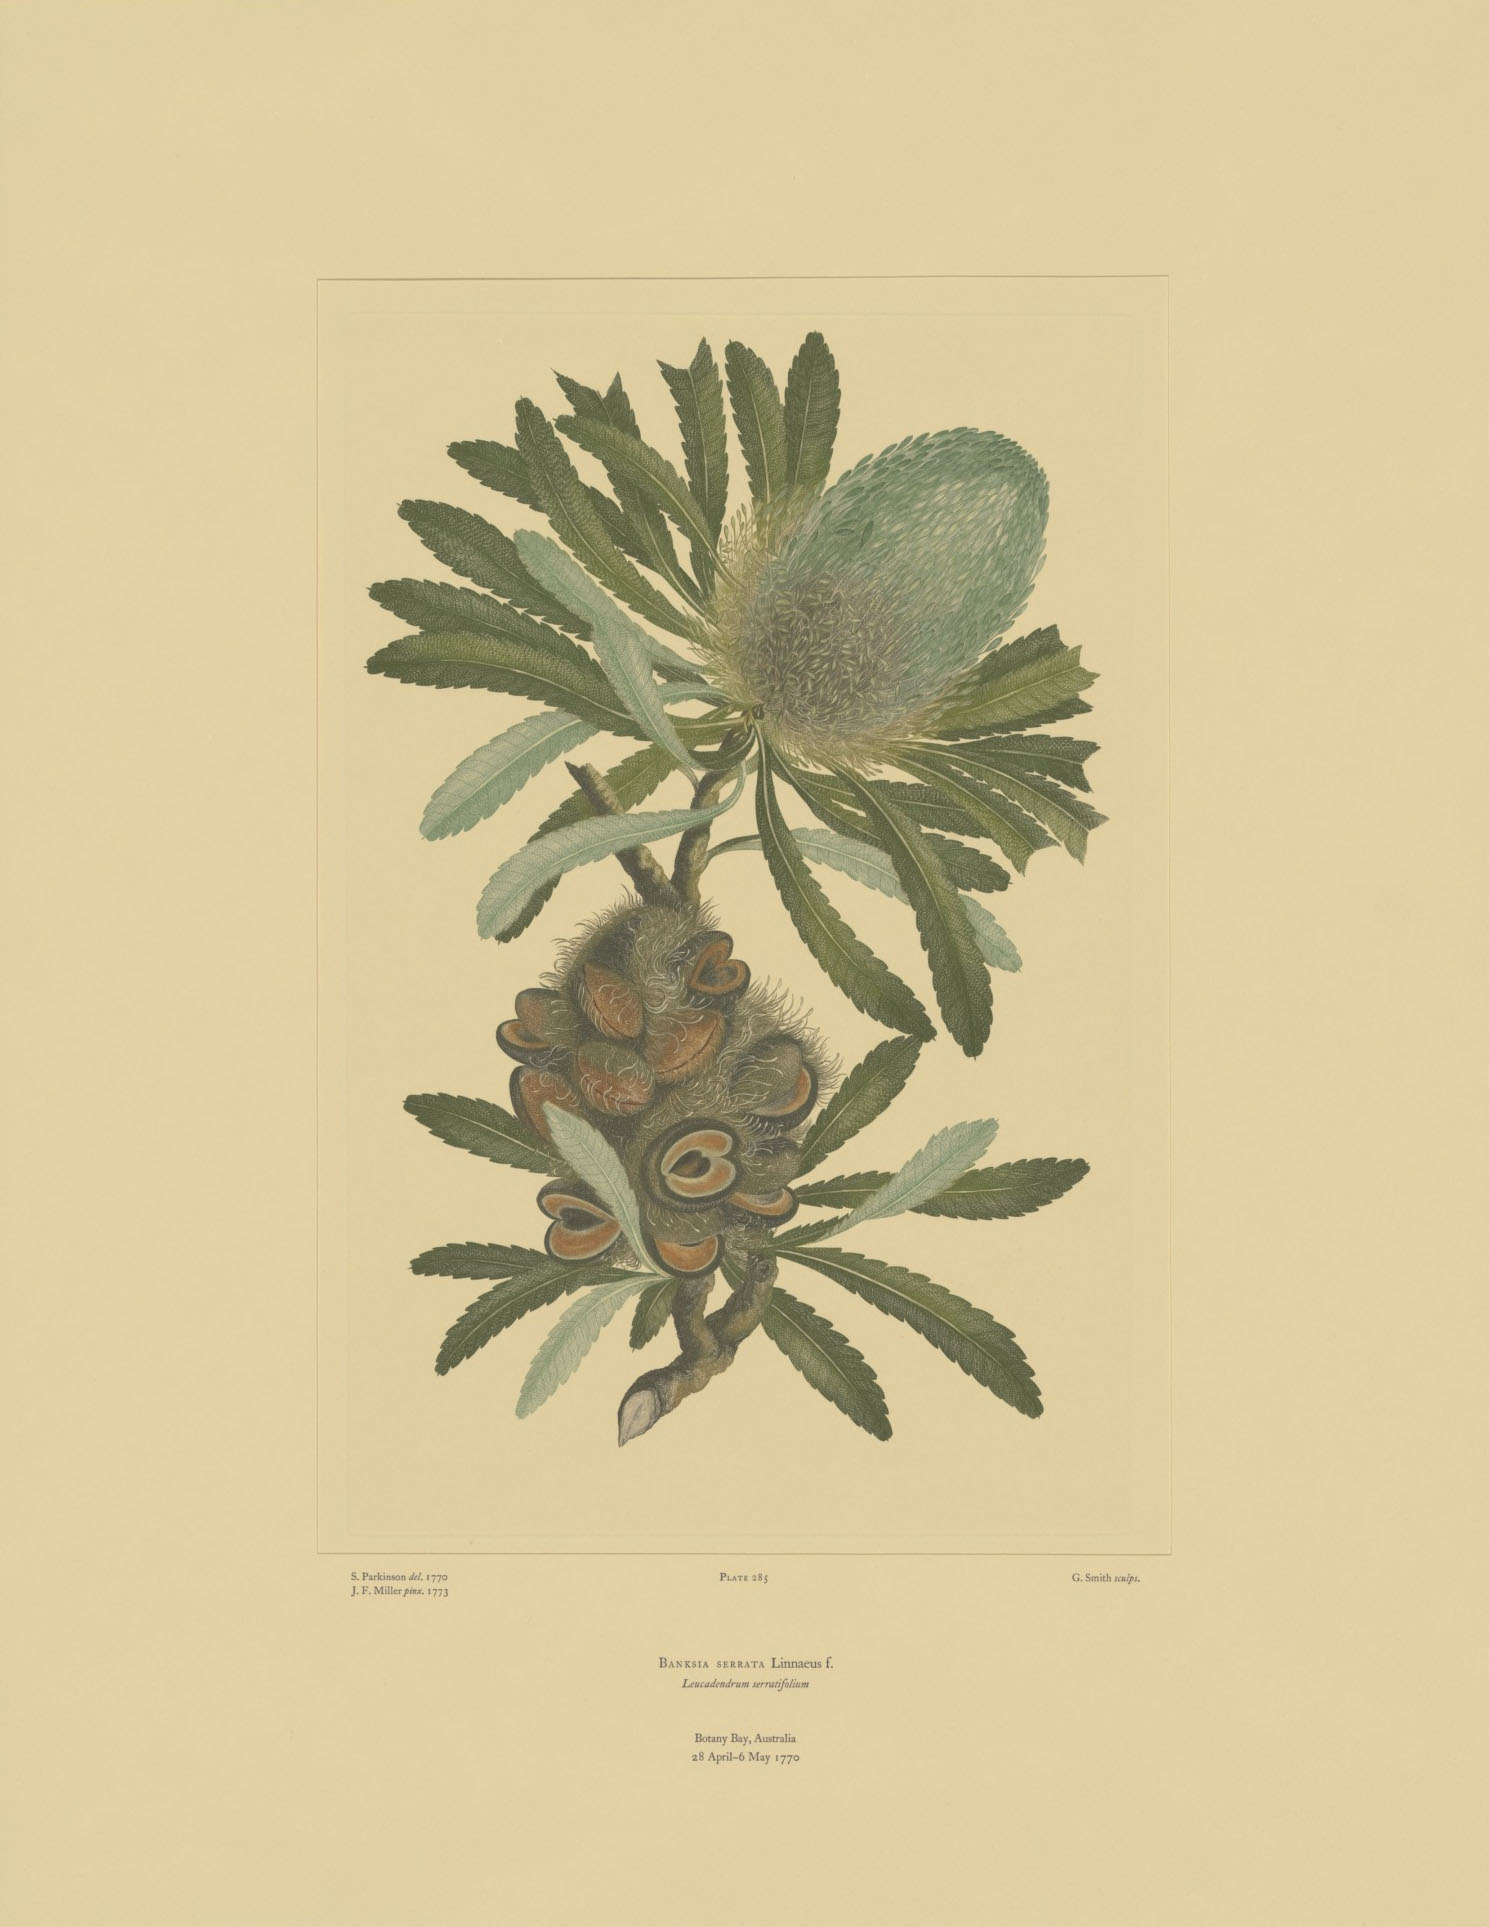 ‘Banksia serrata’ from Joseph Banks’ Florilegium.